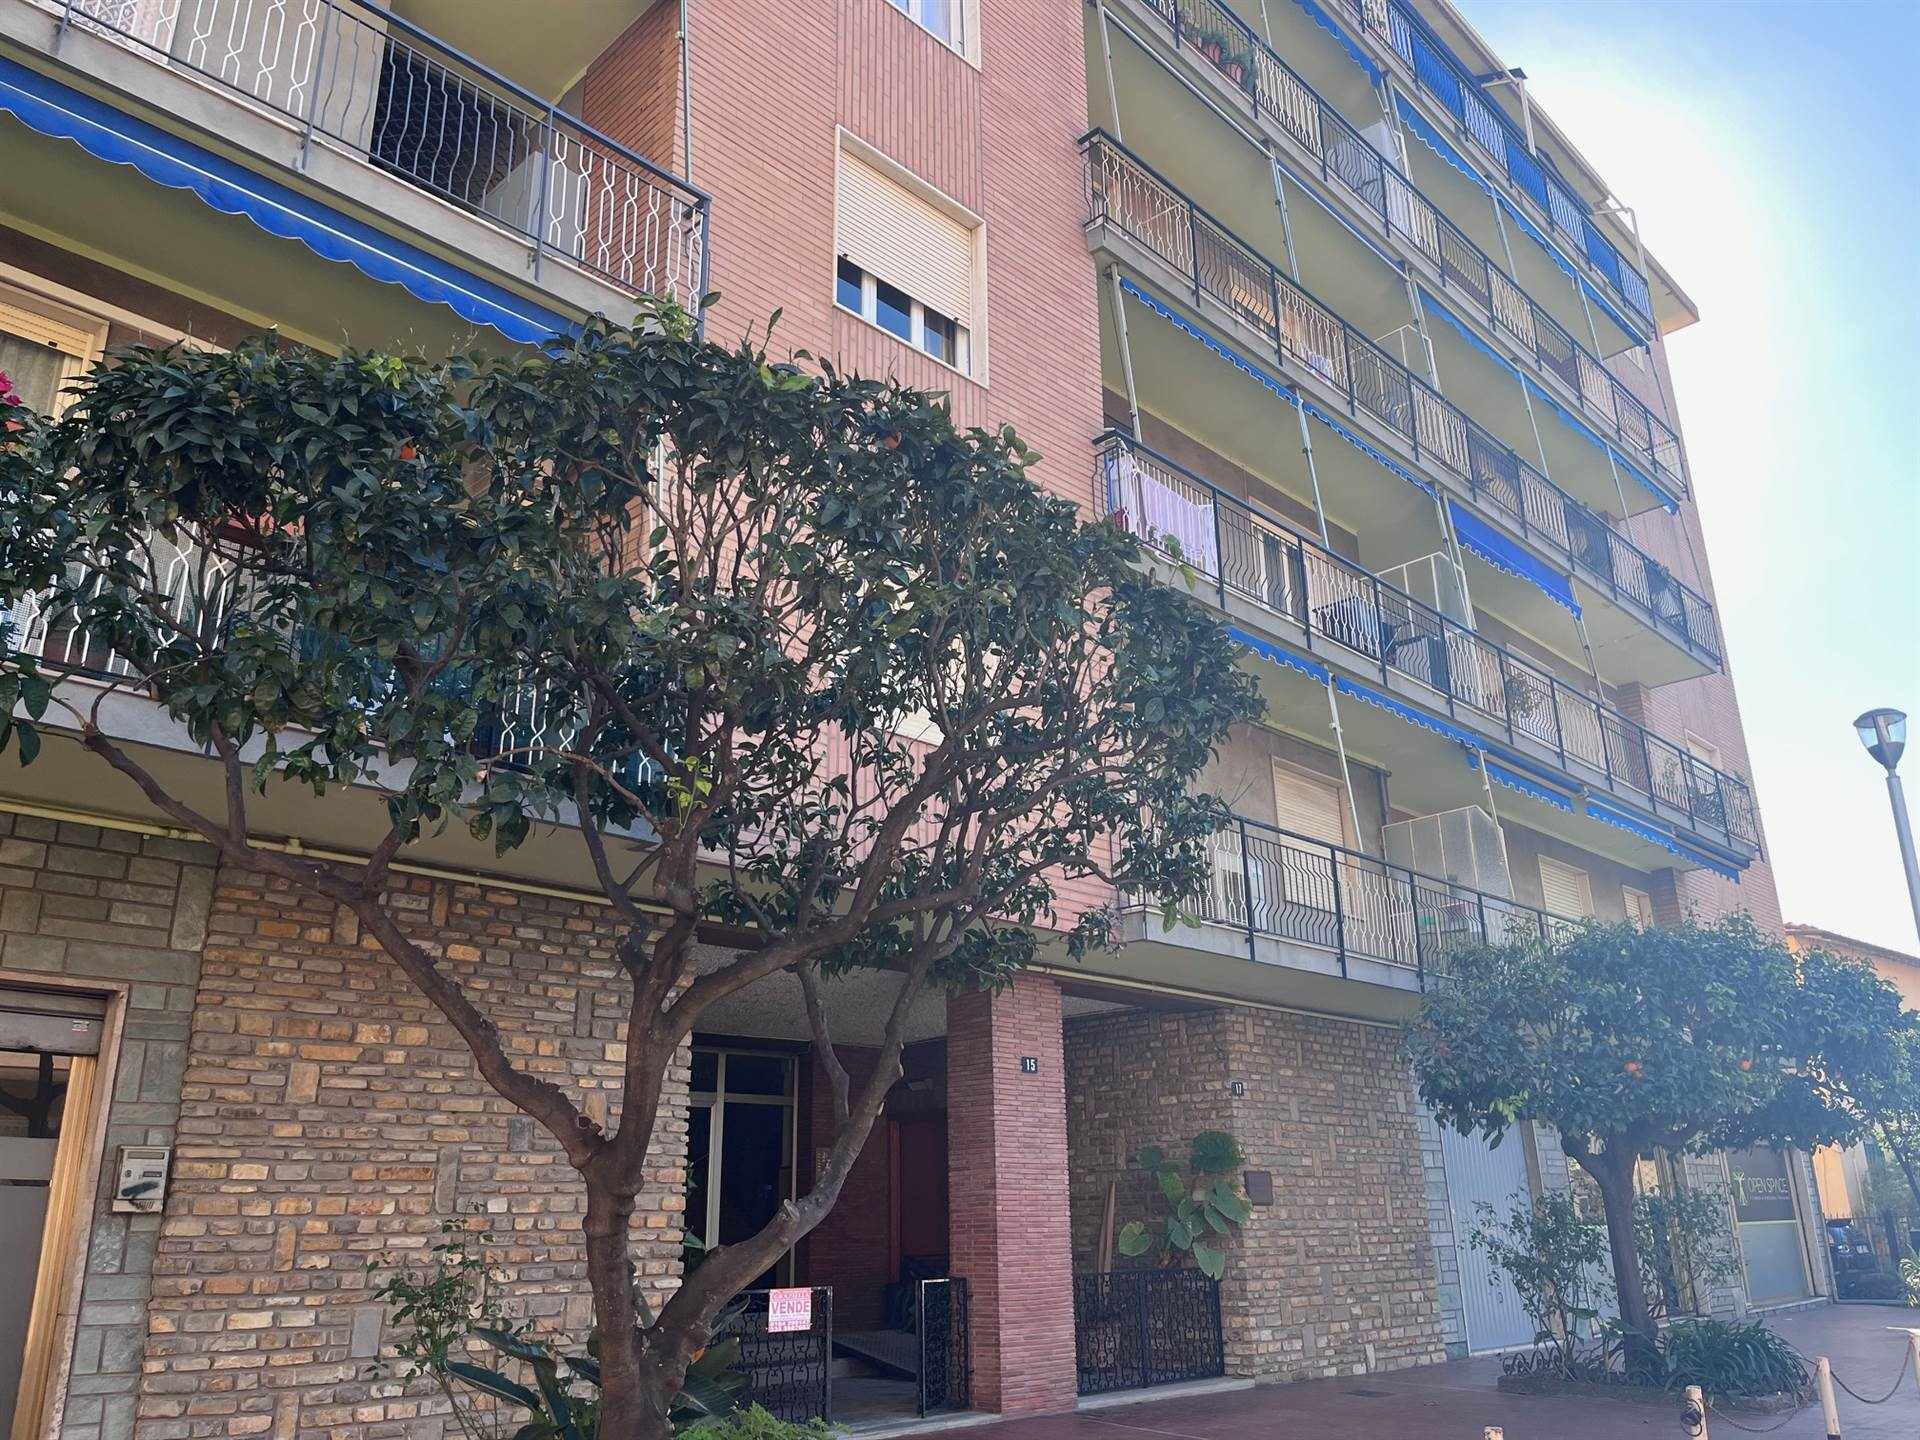 In vendita a Vallecrosia, proponiamo un appartamento di 75 mq circa situato al terzo piano di un edificio con ascensore. L'immobile è composto da tre 